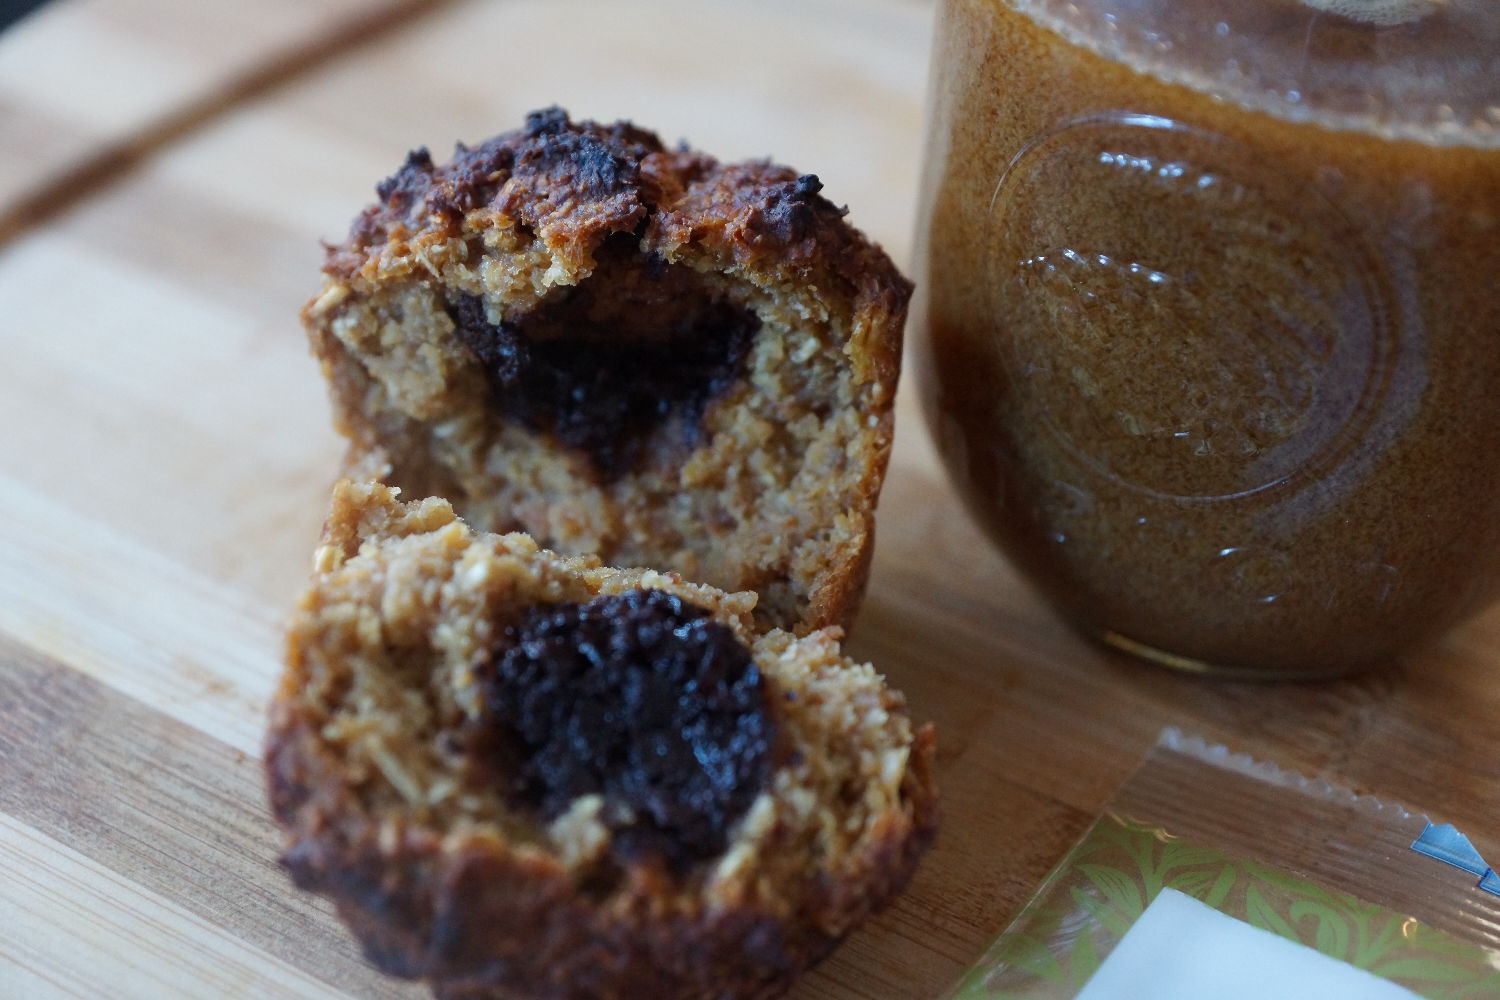 apple muffins with a chocolate center | apfelmuffins mit schokoladenkern